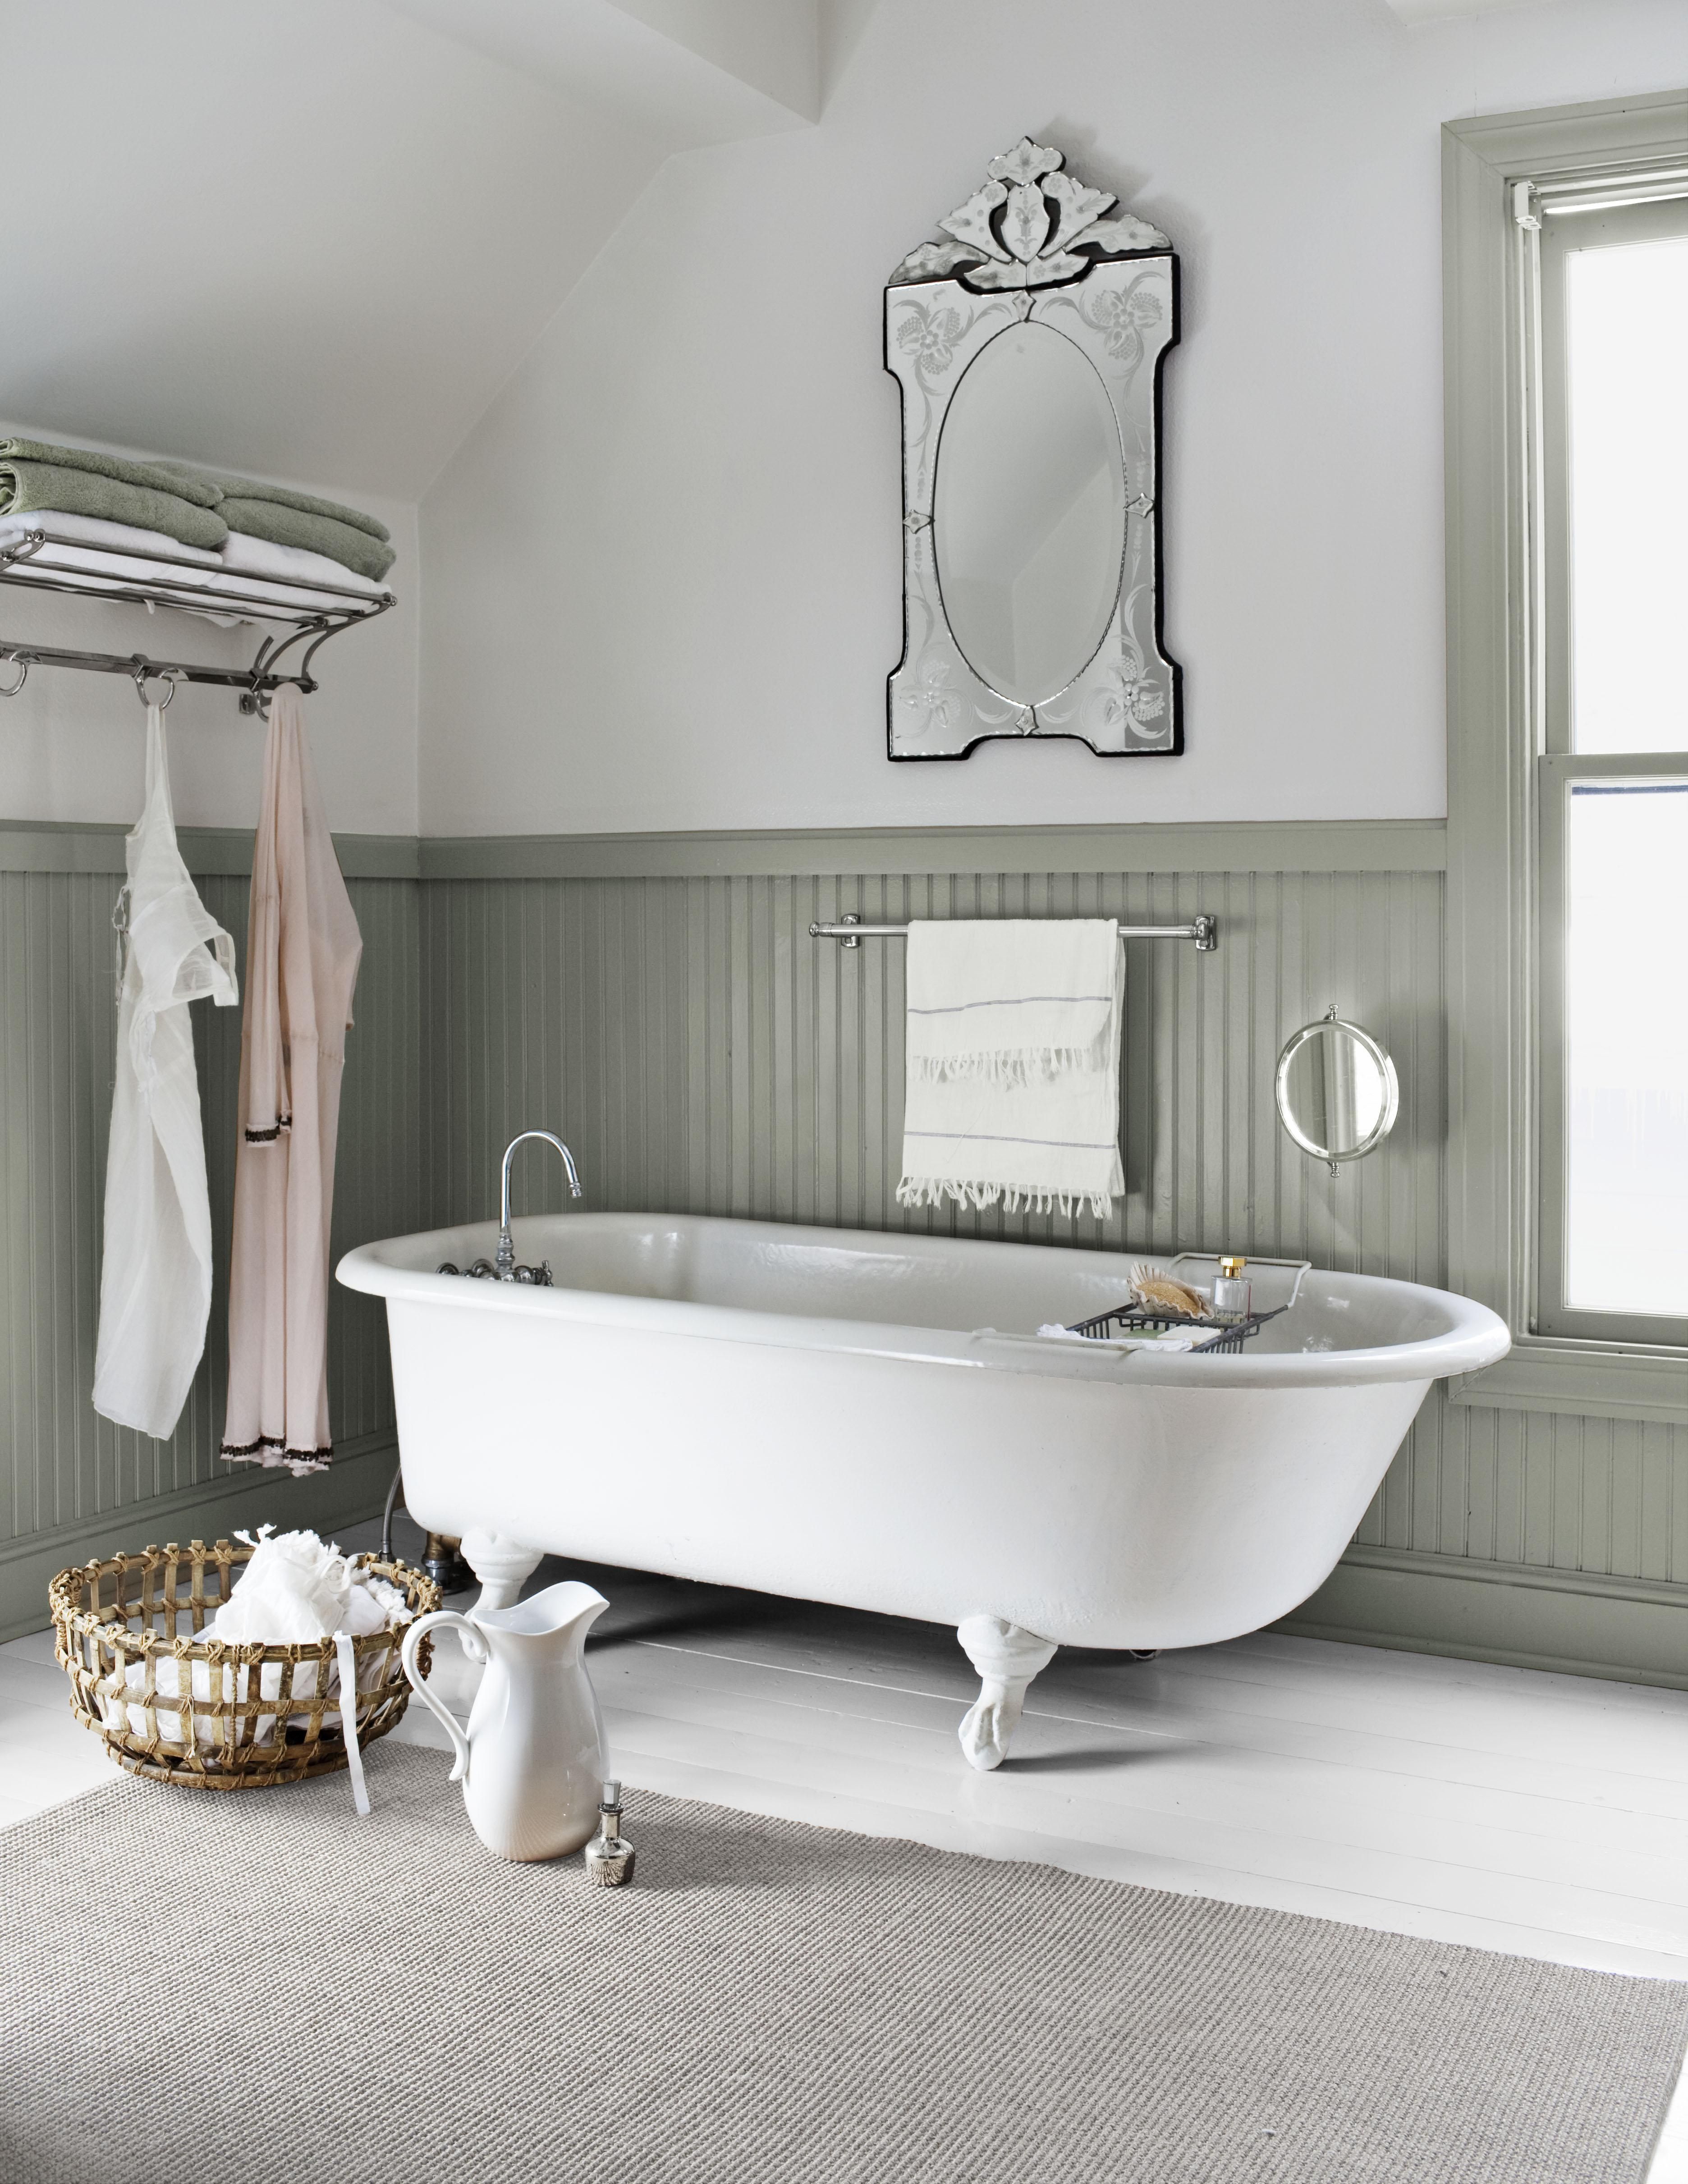 Clawfoot Tub Ideas For Your Bathroom, Claw Bathtub Faucet